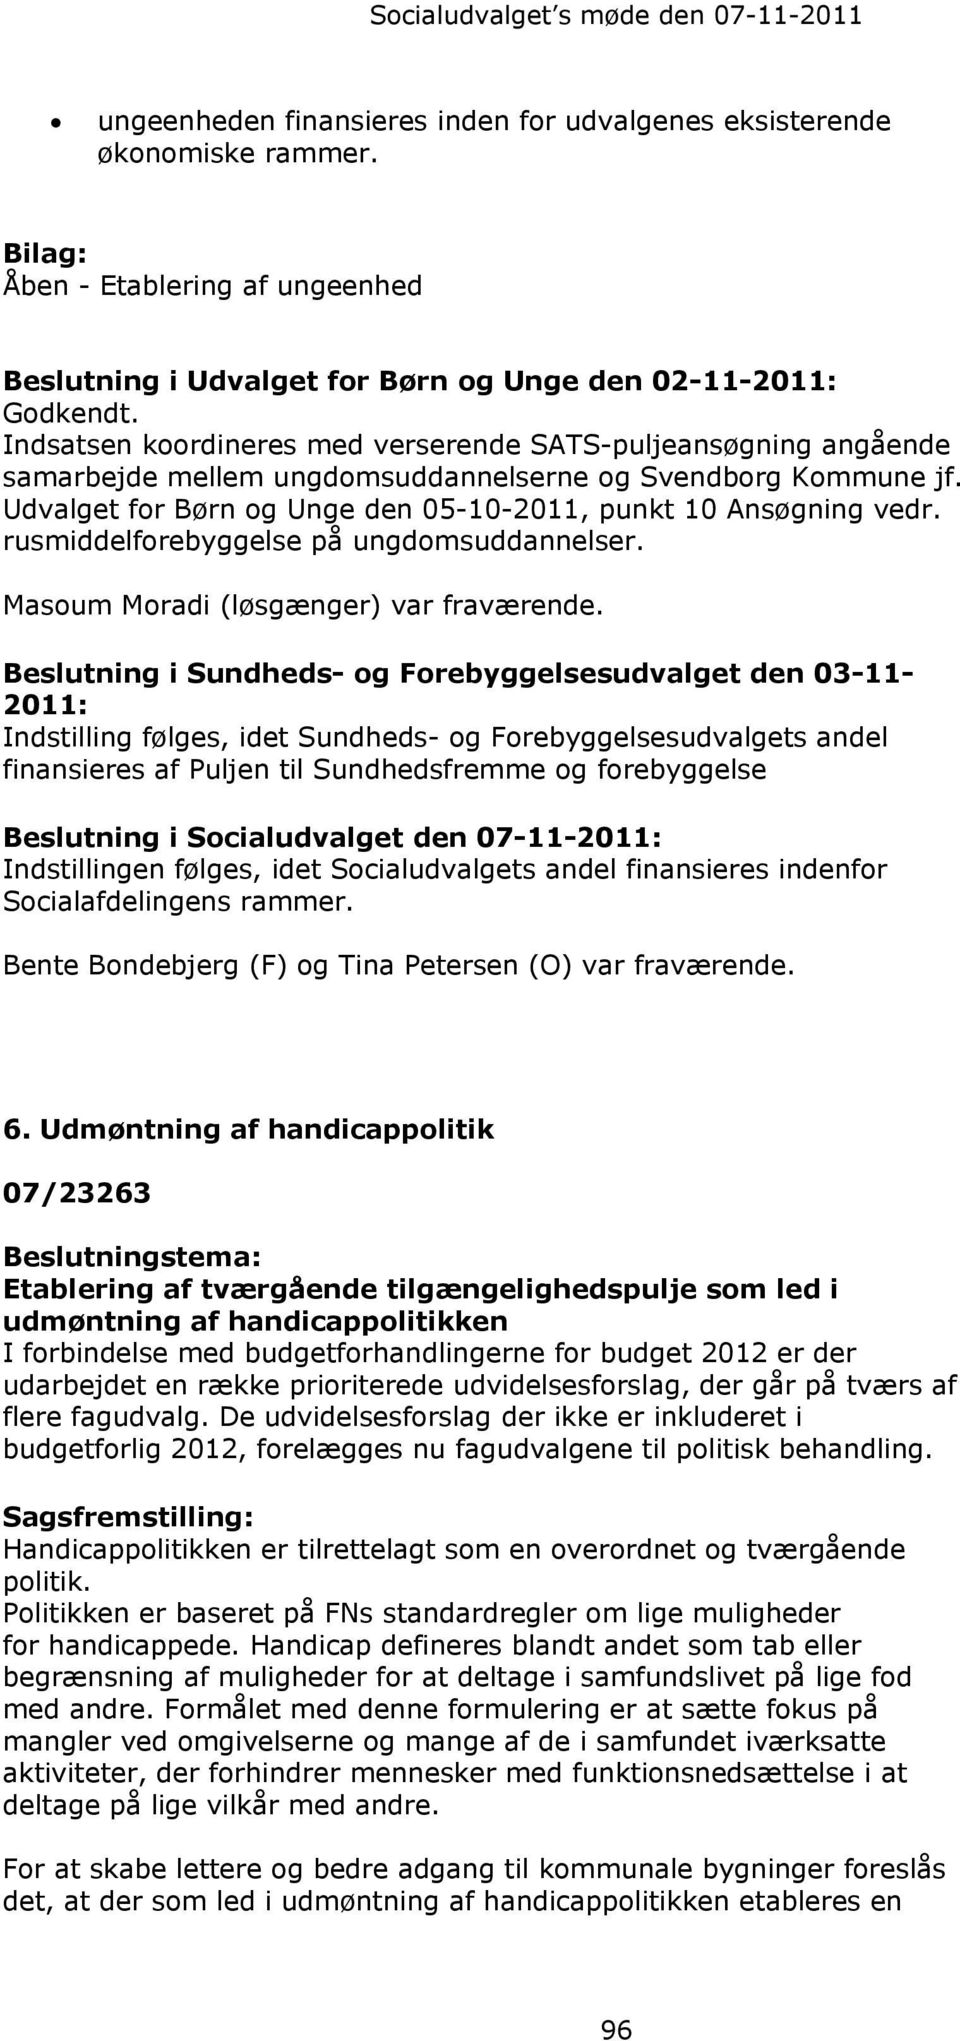 Indsatsen koordineres med verserende SATS-puljeansøgning angående samarbejde mellem ungdomsuddannelserne og Svendborg Kommune jf. Udvalget for Børn og Unge den 05-10-2011, punkt 10 Ansøgning vedr.